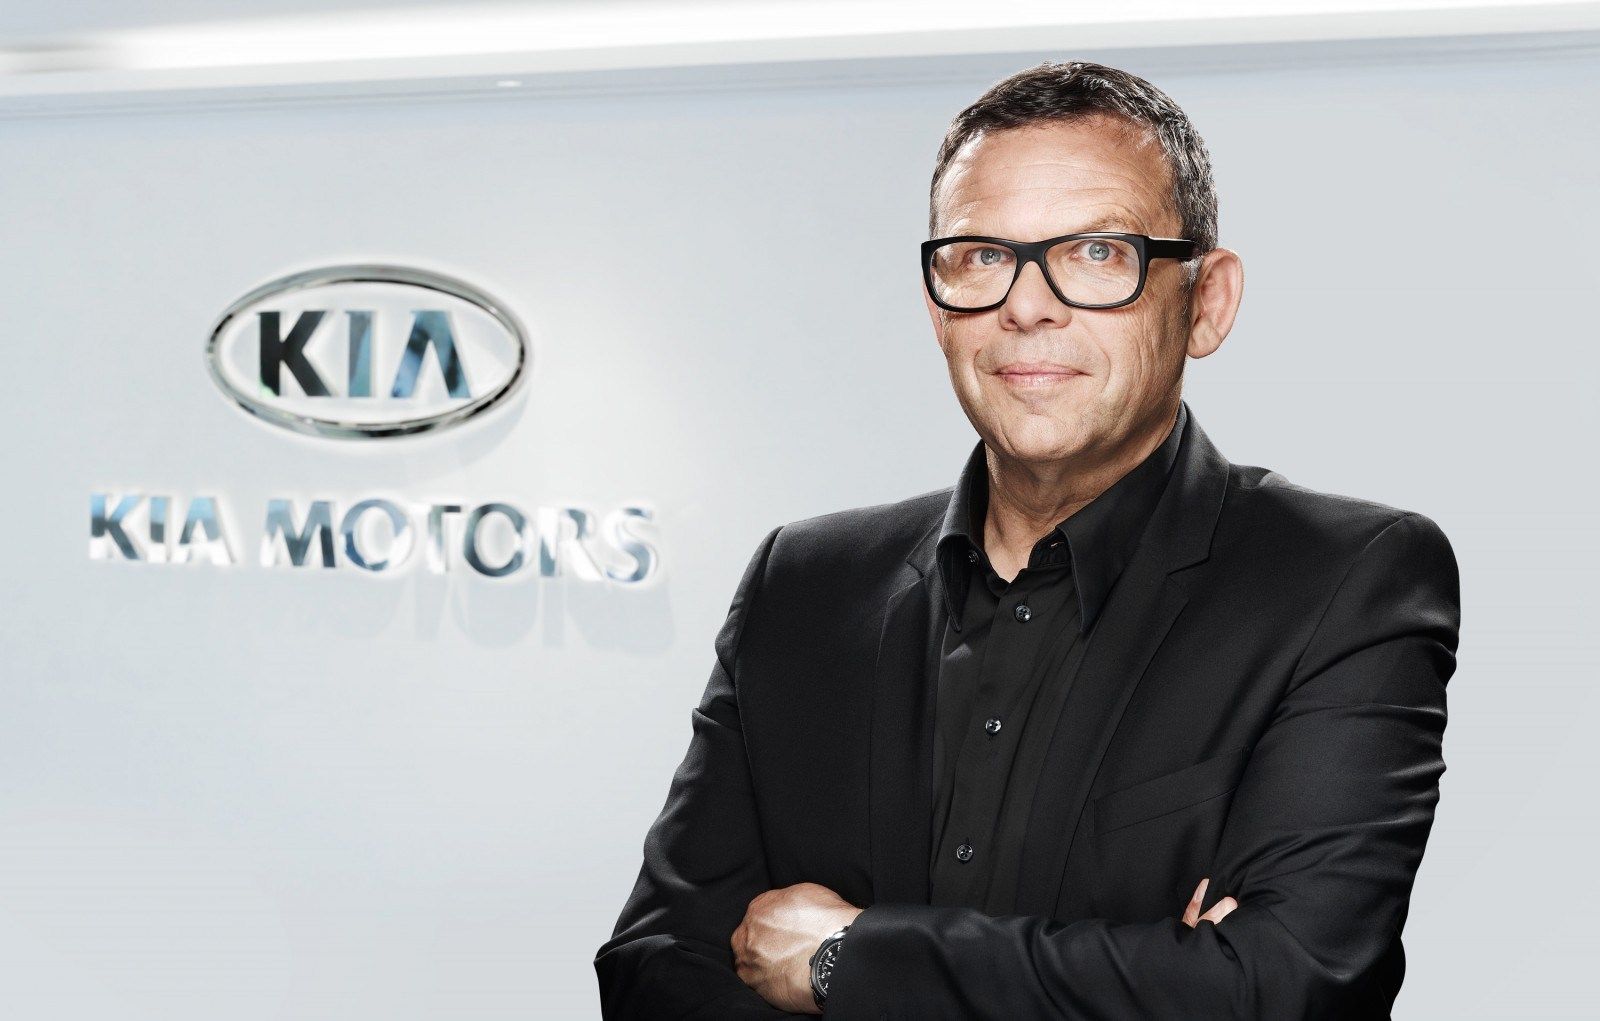 Peter Schreyer in front of a Kia logo